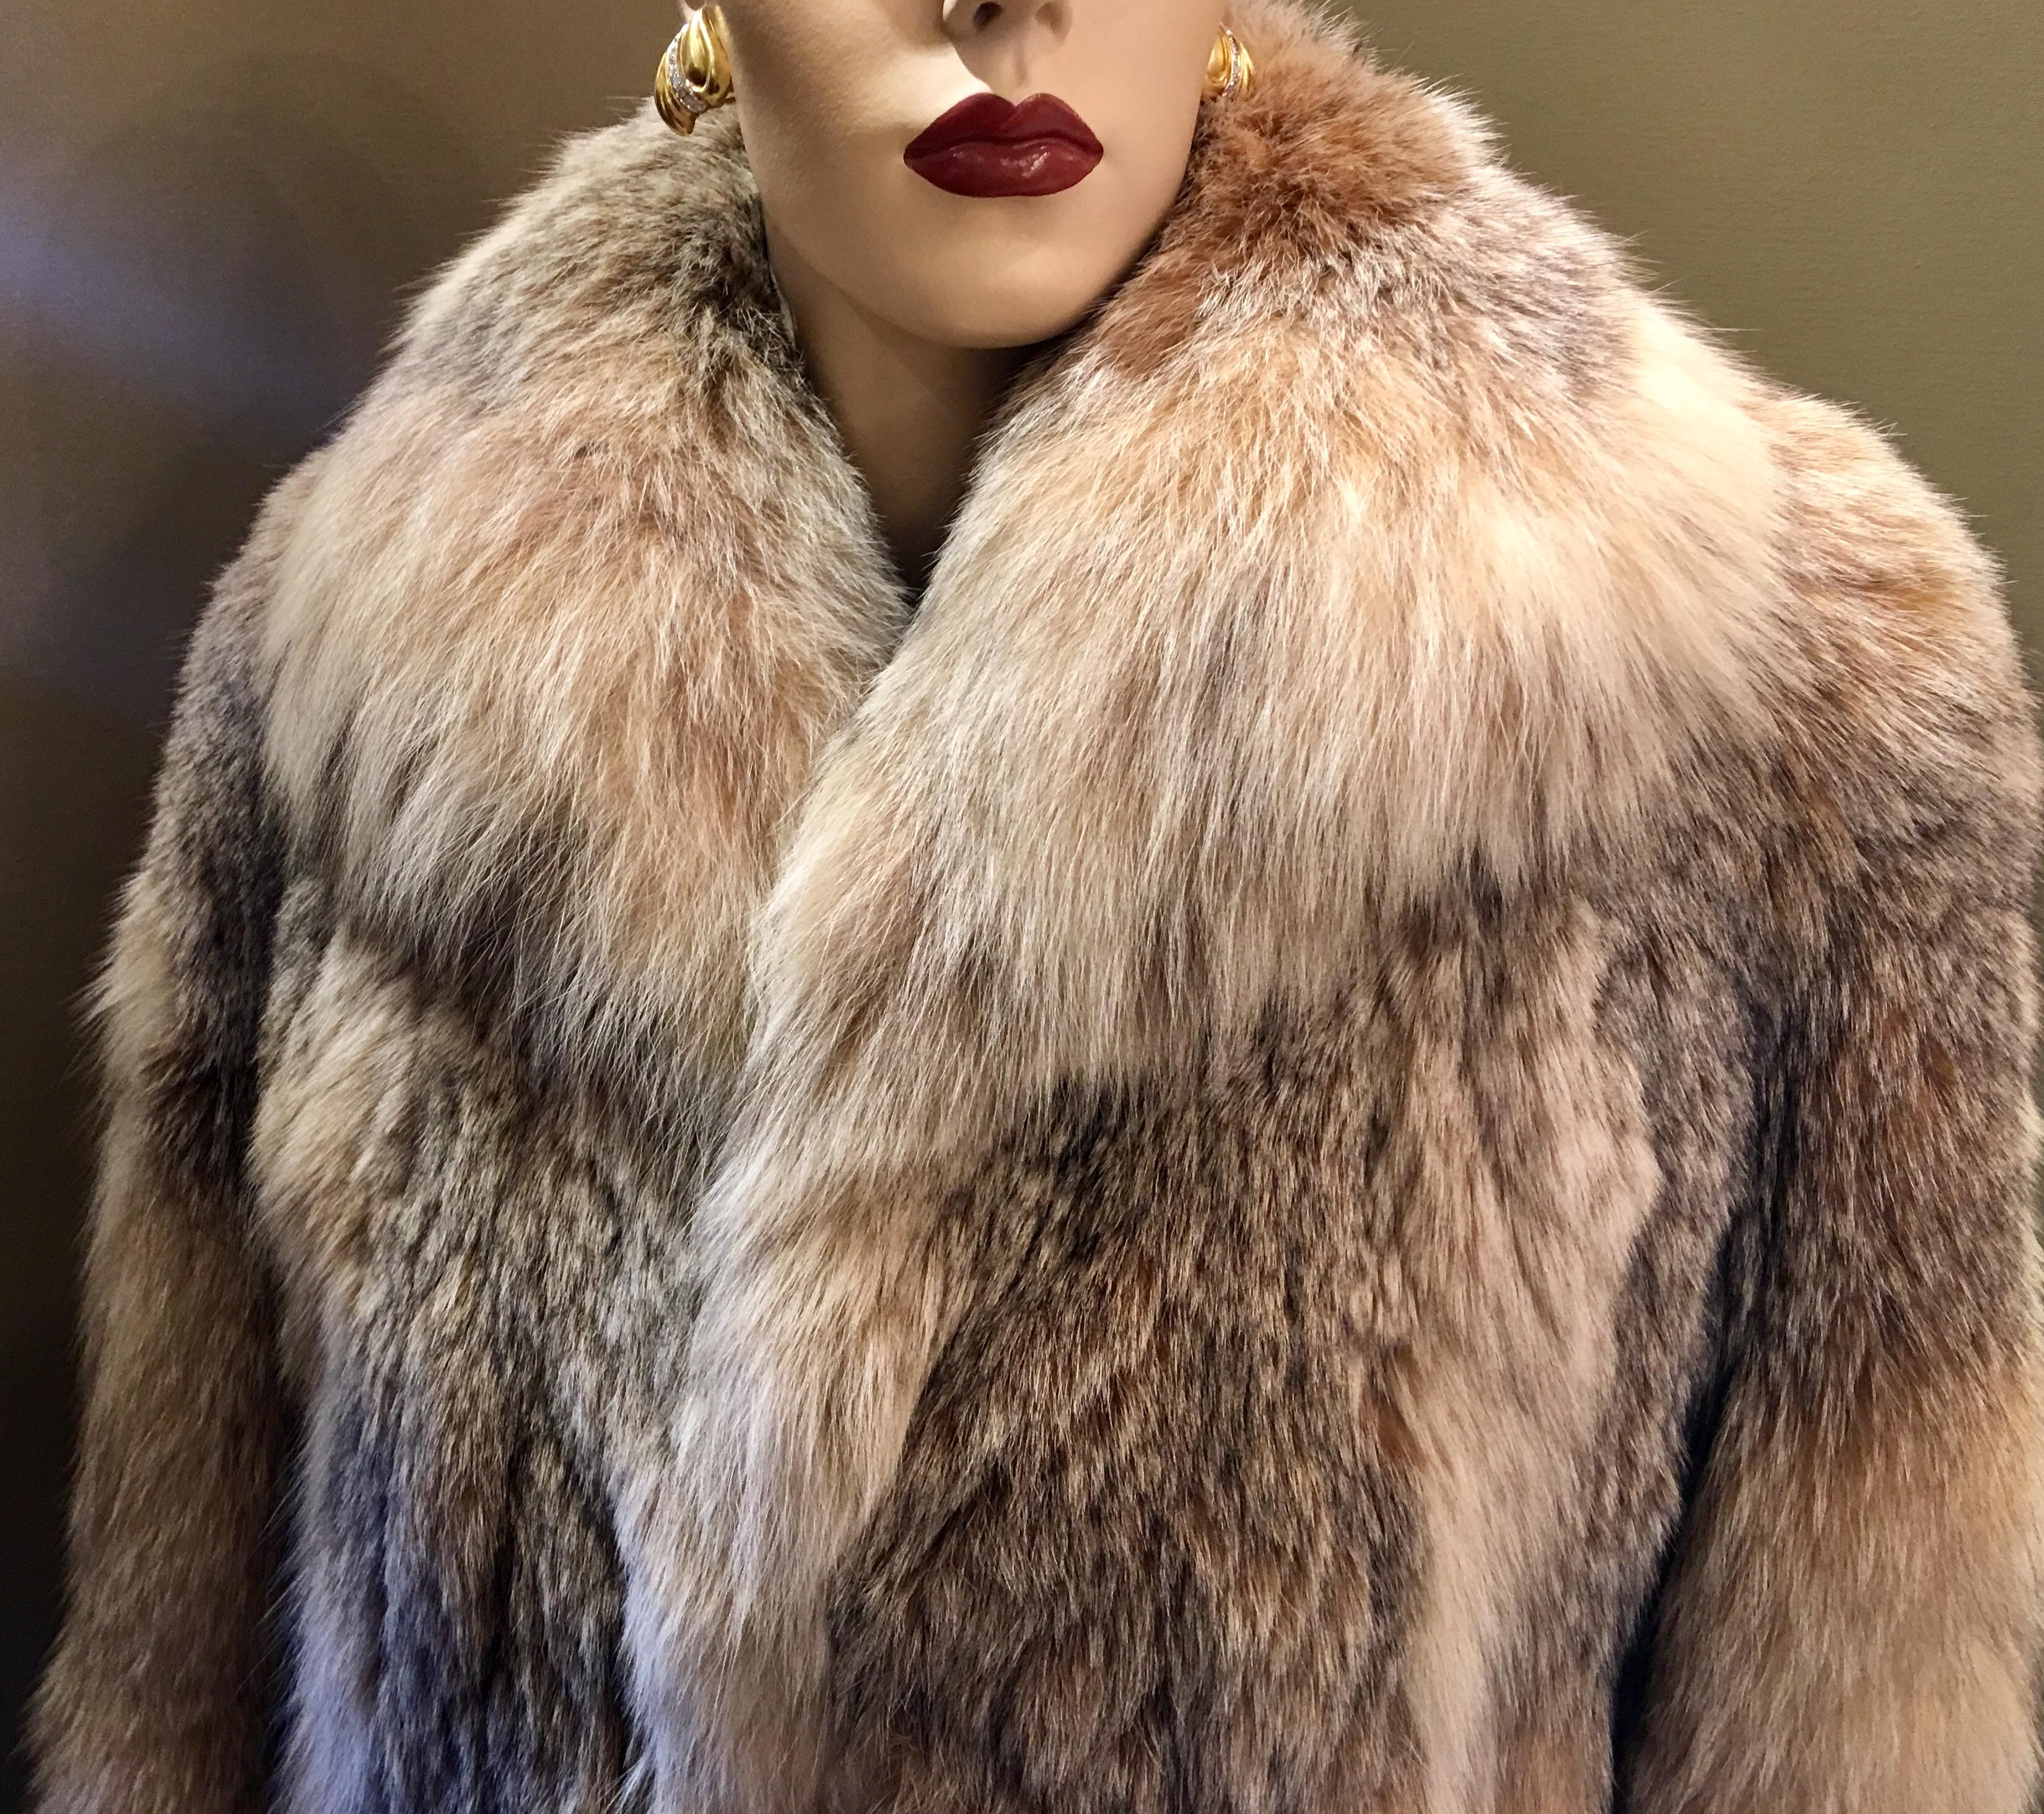 Sumptuous Siberian Lynx Fur Coat by Revillion Paris New York Full Length 2